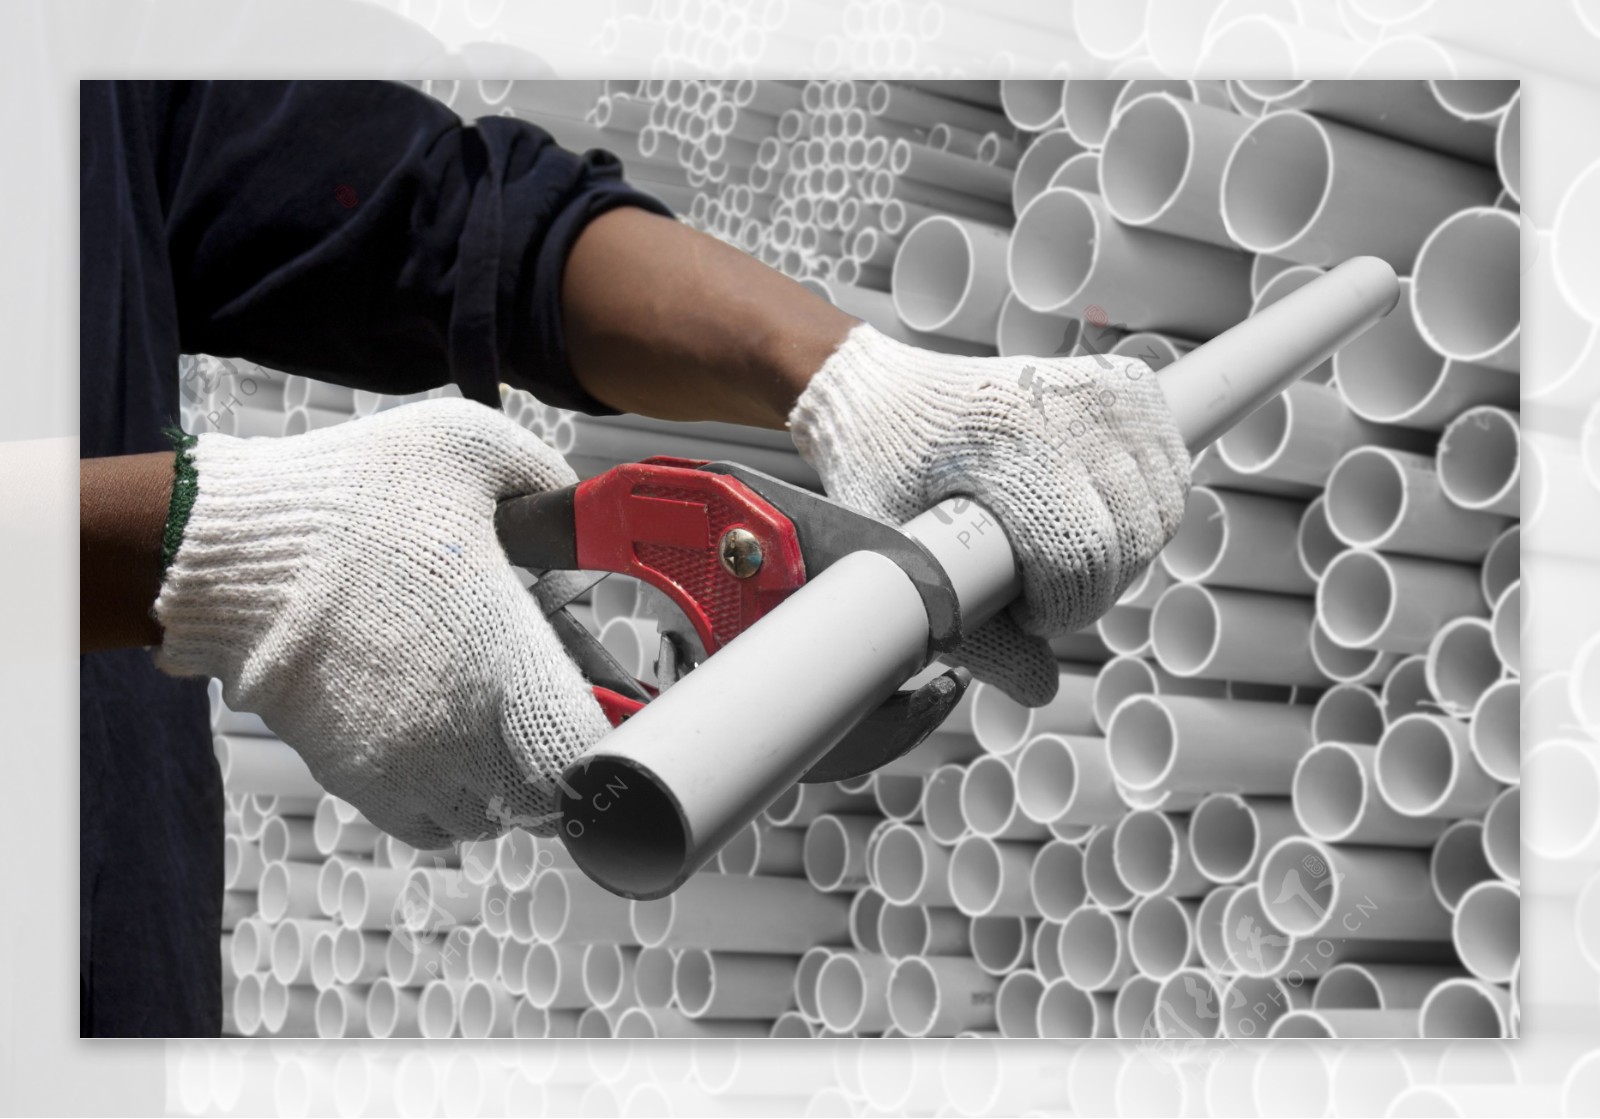 切白色PVC管的建筑工人图片